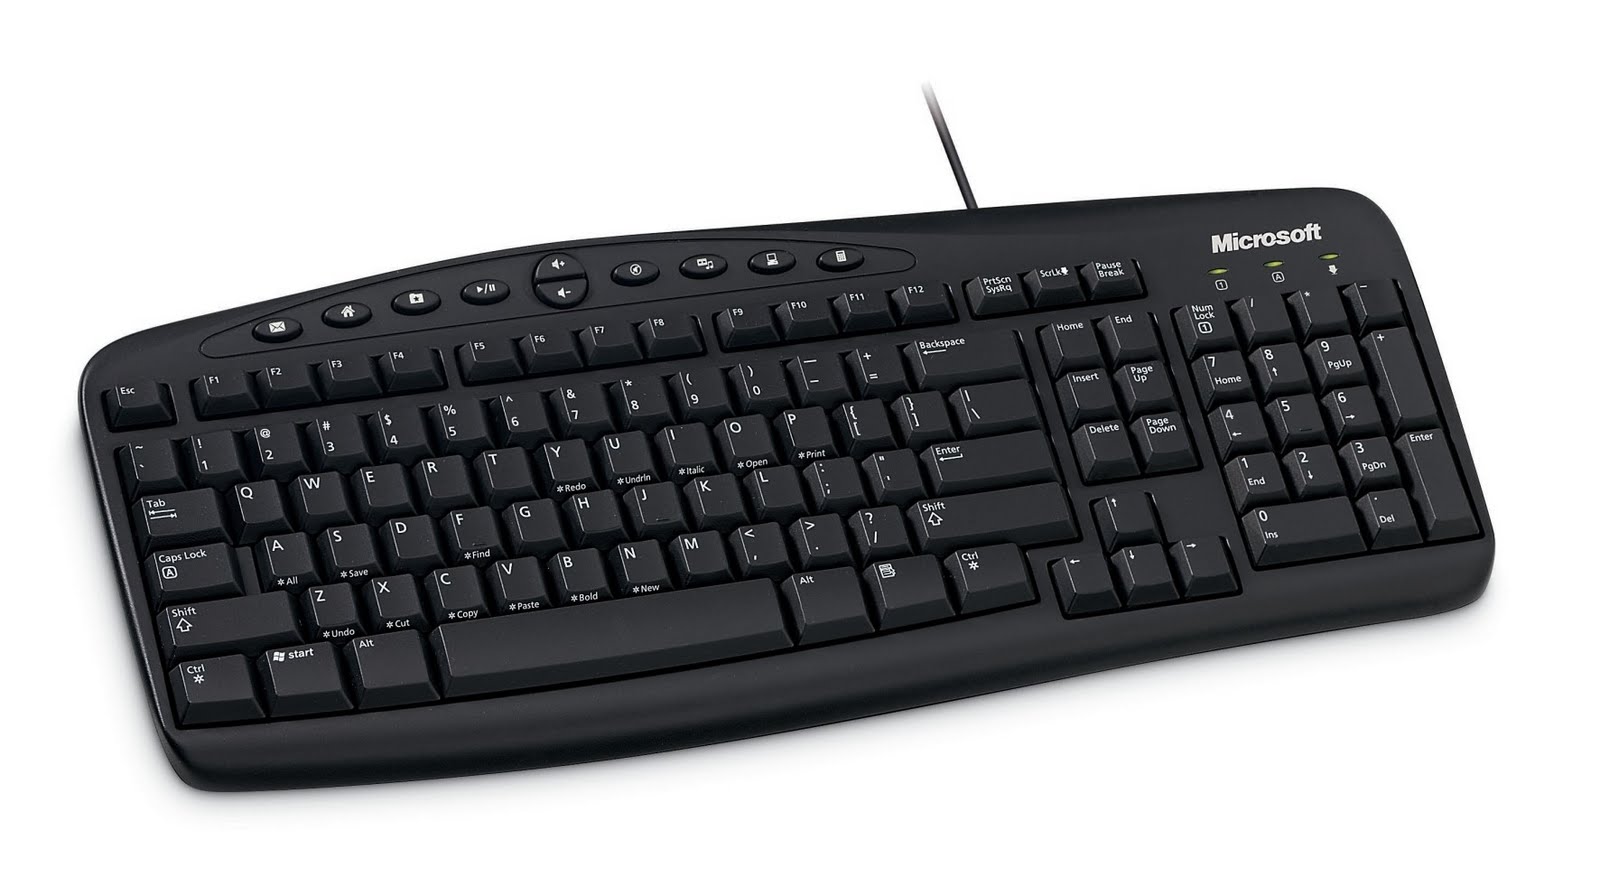 Usando el teclado para comunicarnos con el kernel Linux… La tecla Sysrq